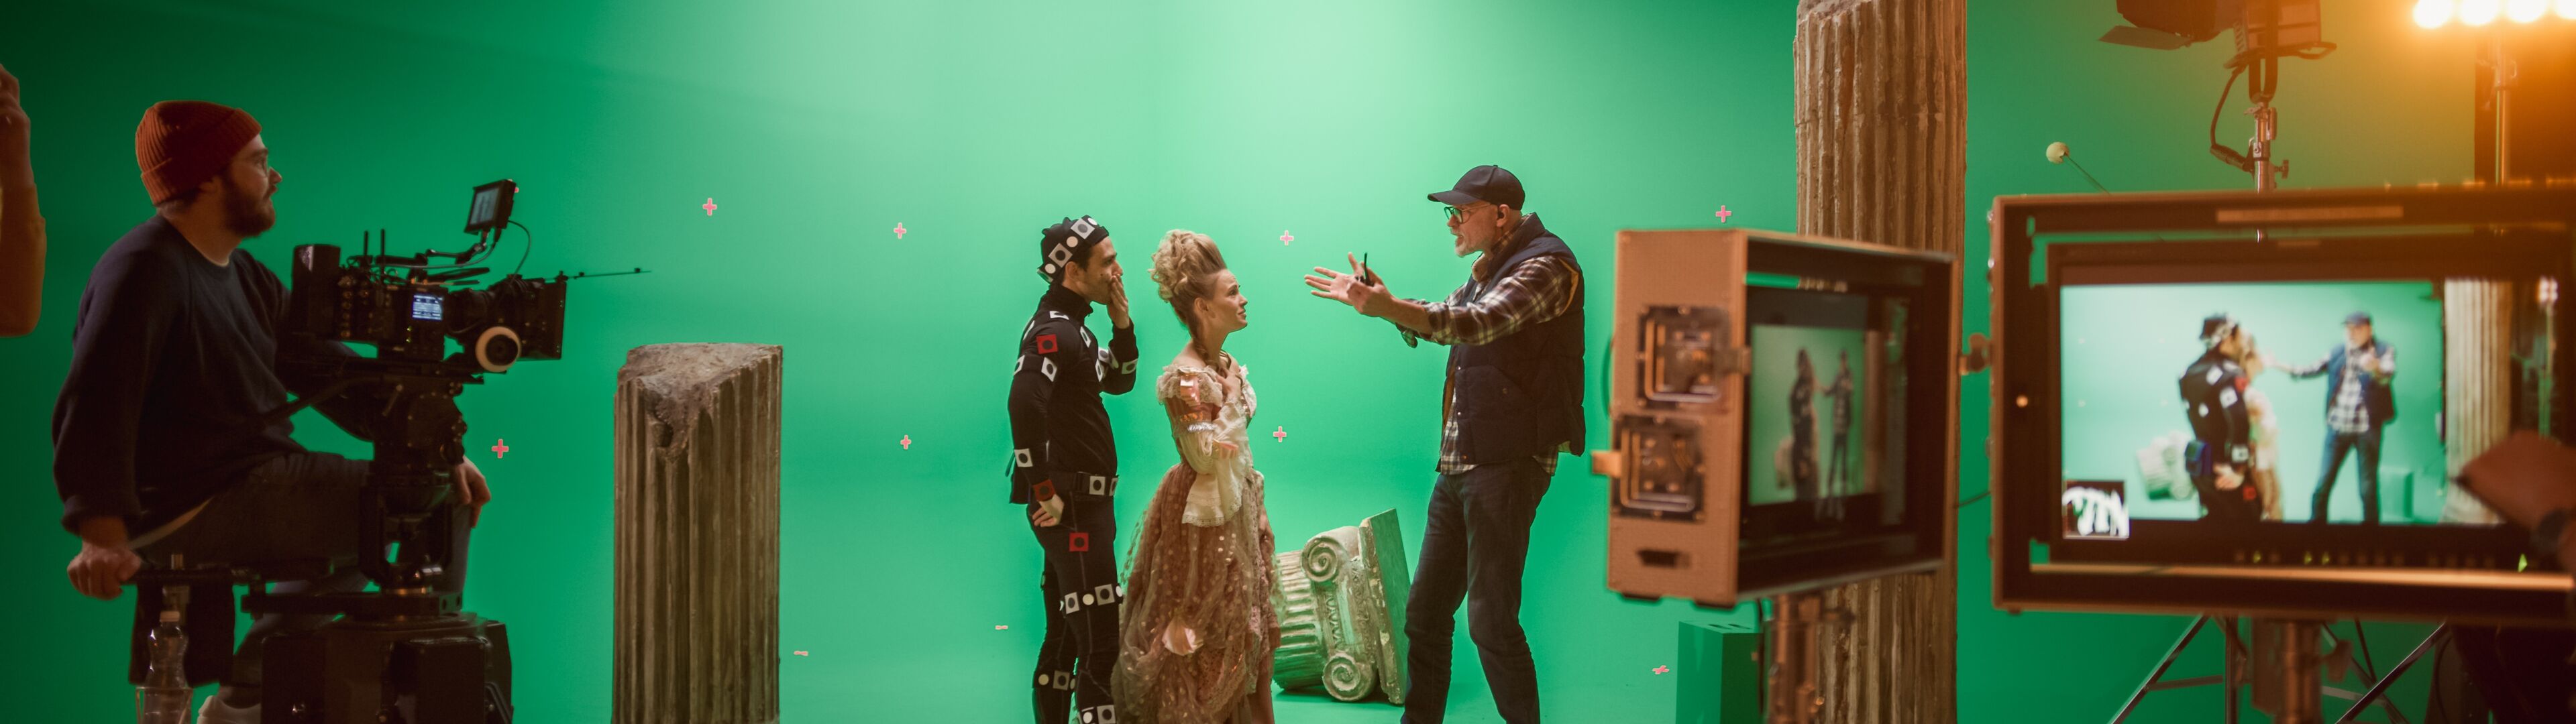 Director instruyendo actores con trajes de captura de movimiento en un set con pantalla verde, con equipo de cámara e iluminación.